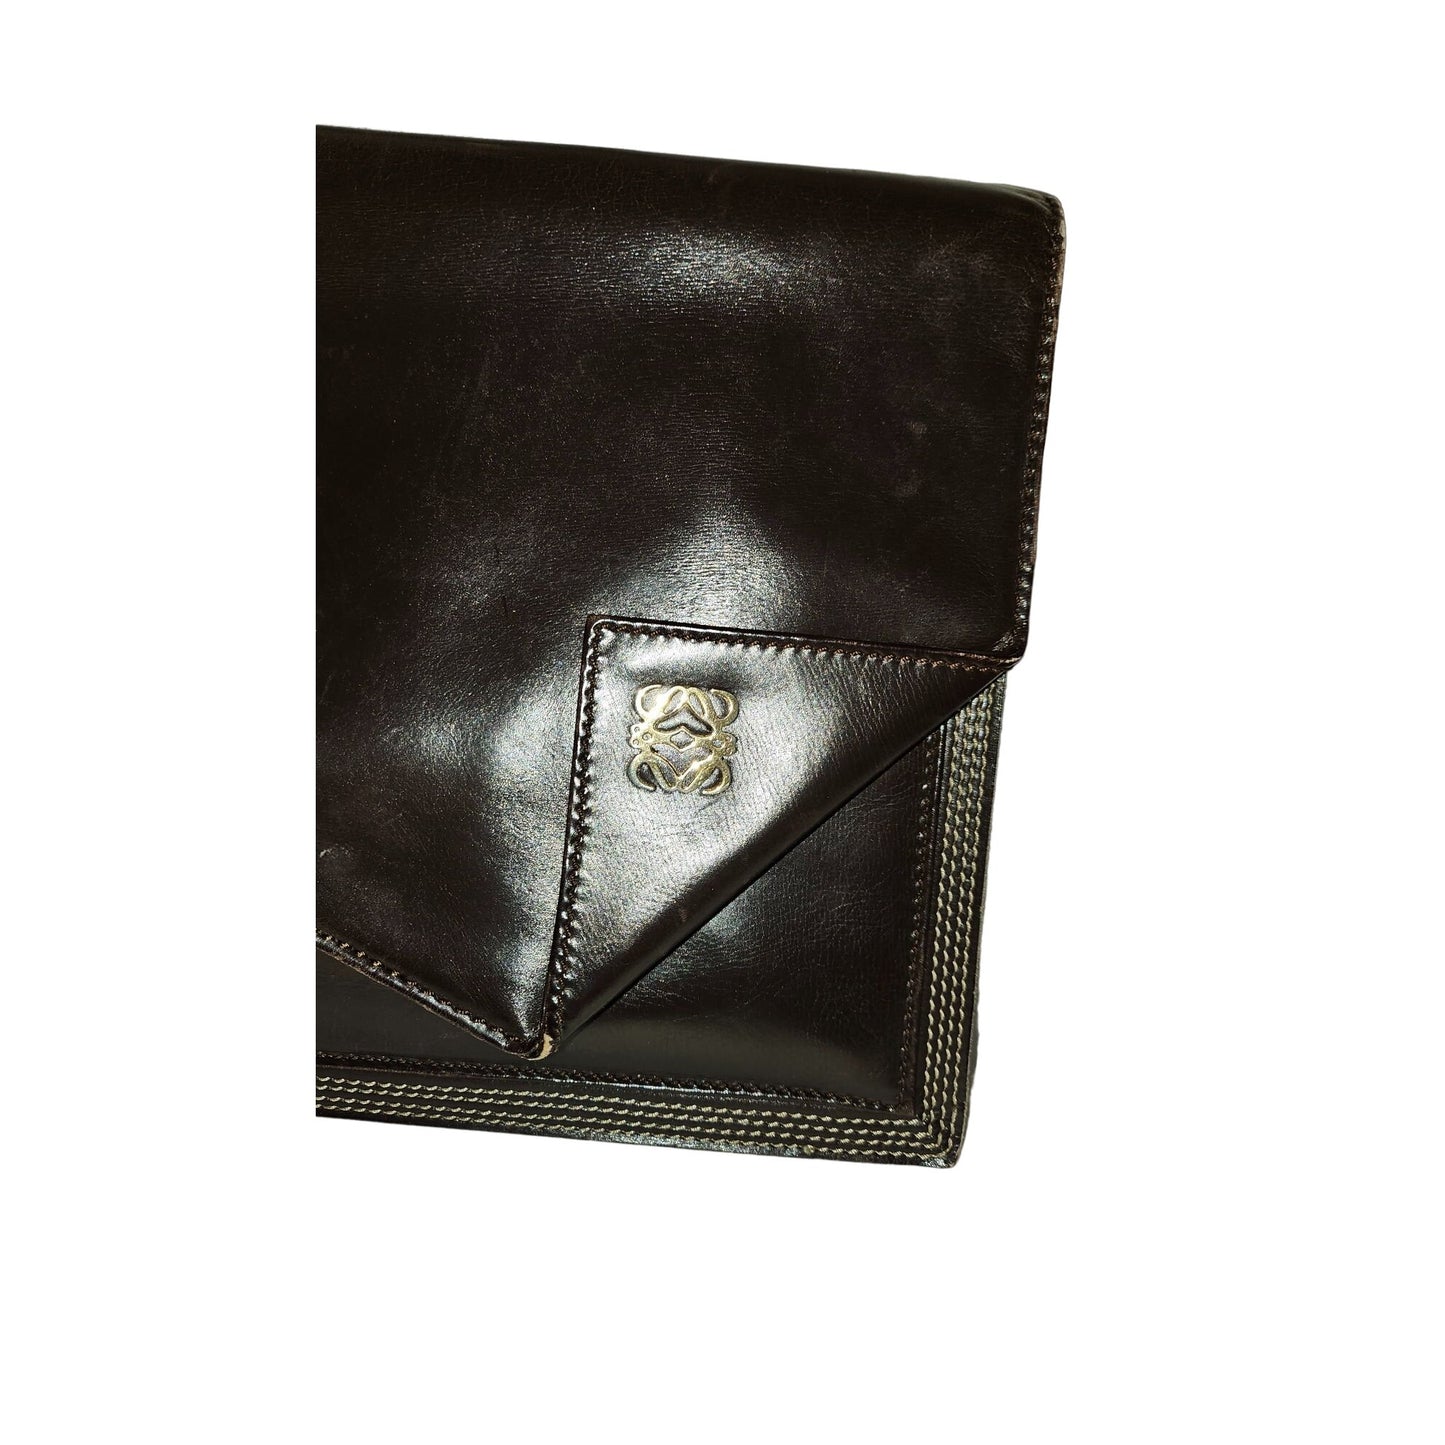 Loewe mahogany leather asymmetrical XL clutch